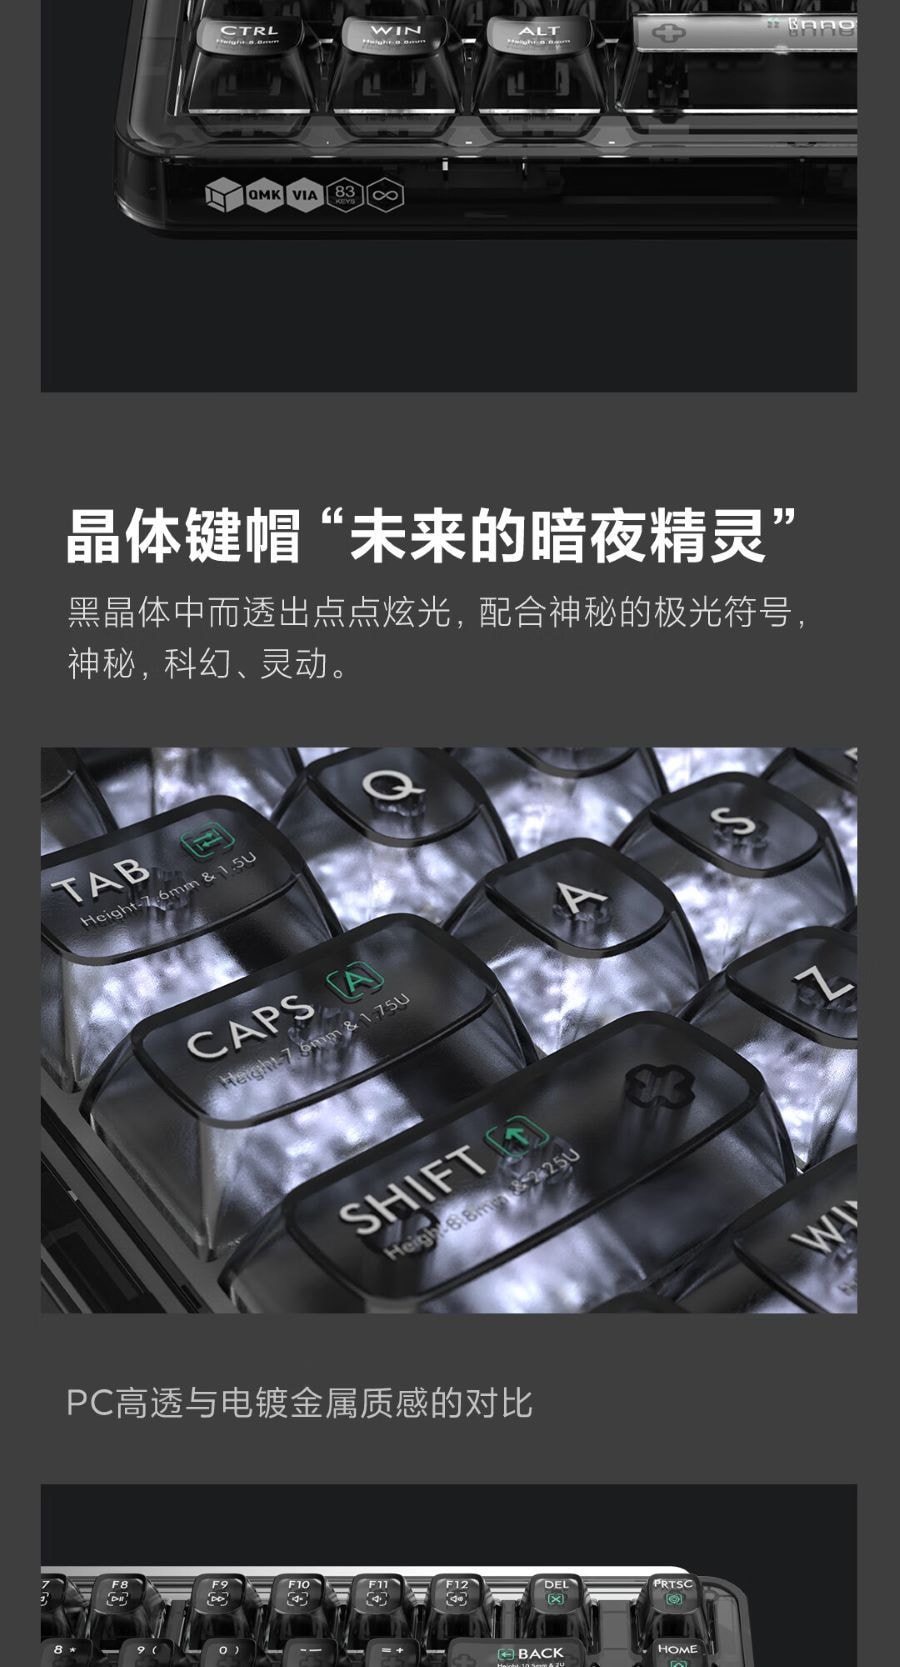 小米生态链 MIIIW米物 BlackIO客制化机械键盘 暗银